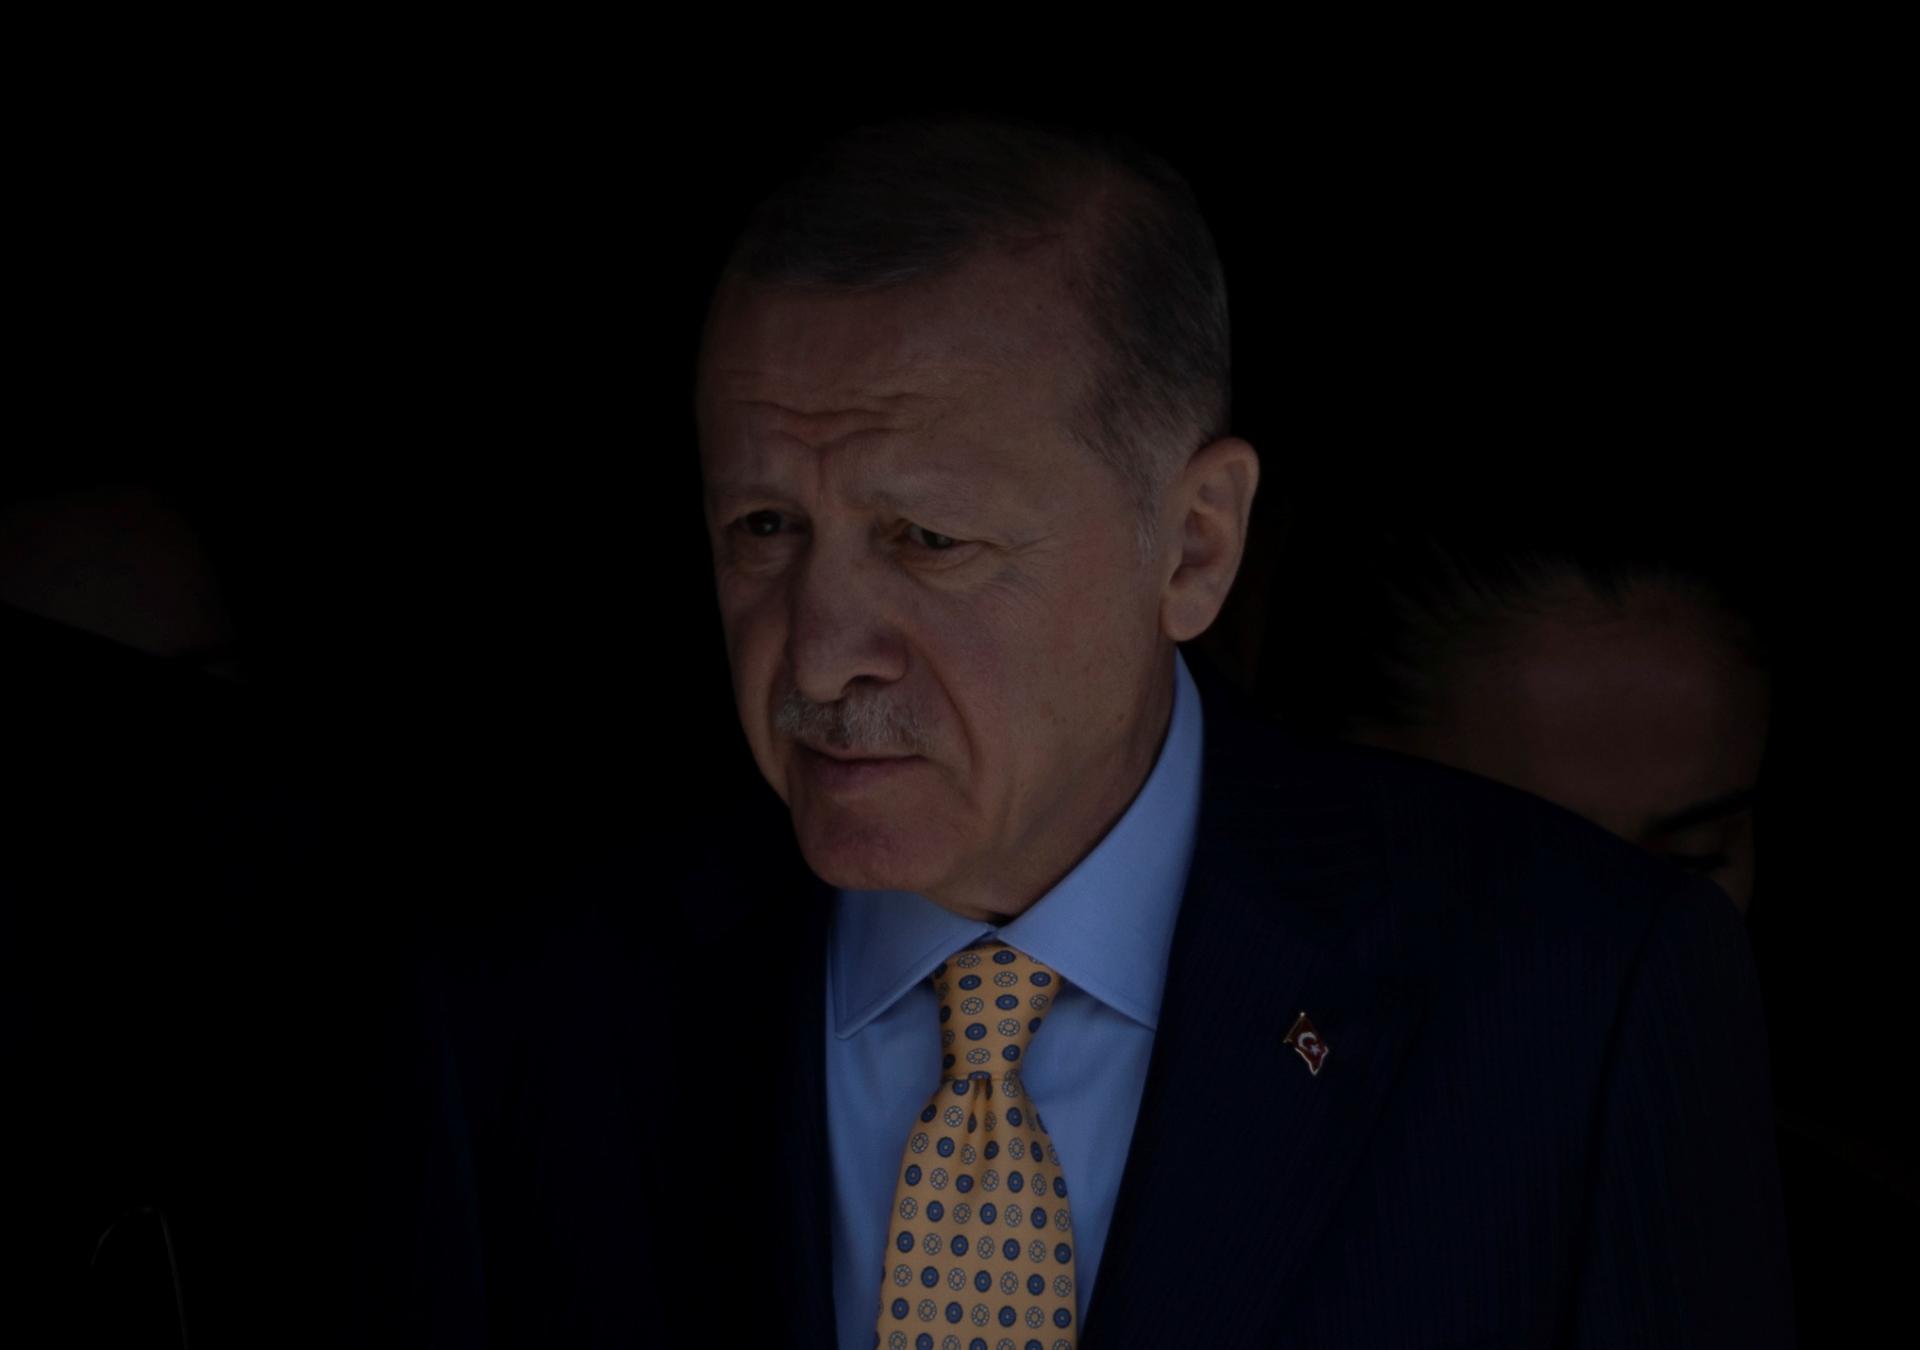 Erdogan priznal, že jeho strana nedosiahla v komunálnych voľbách očakávané výsledky